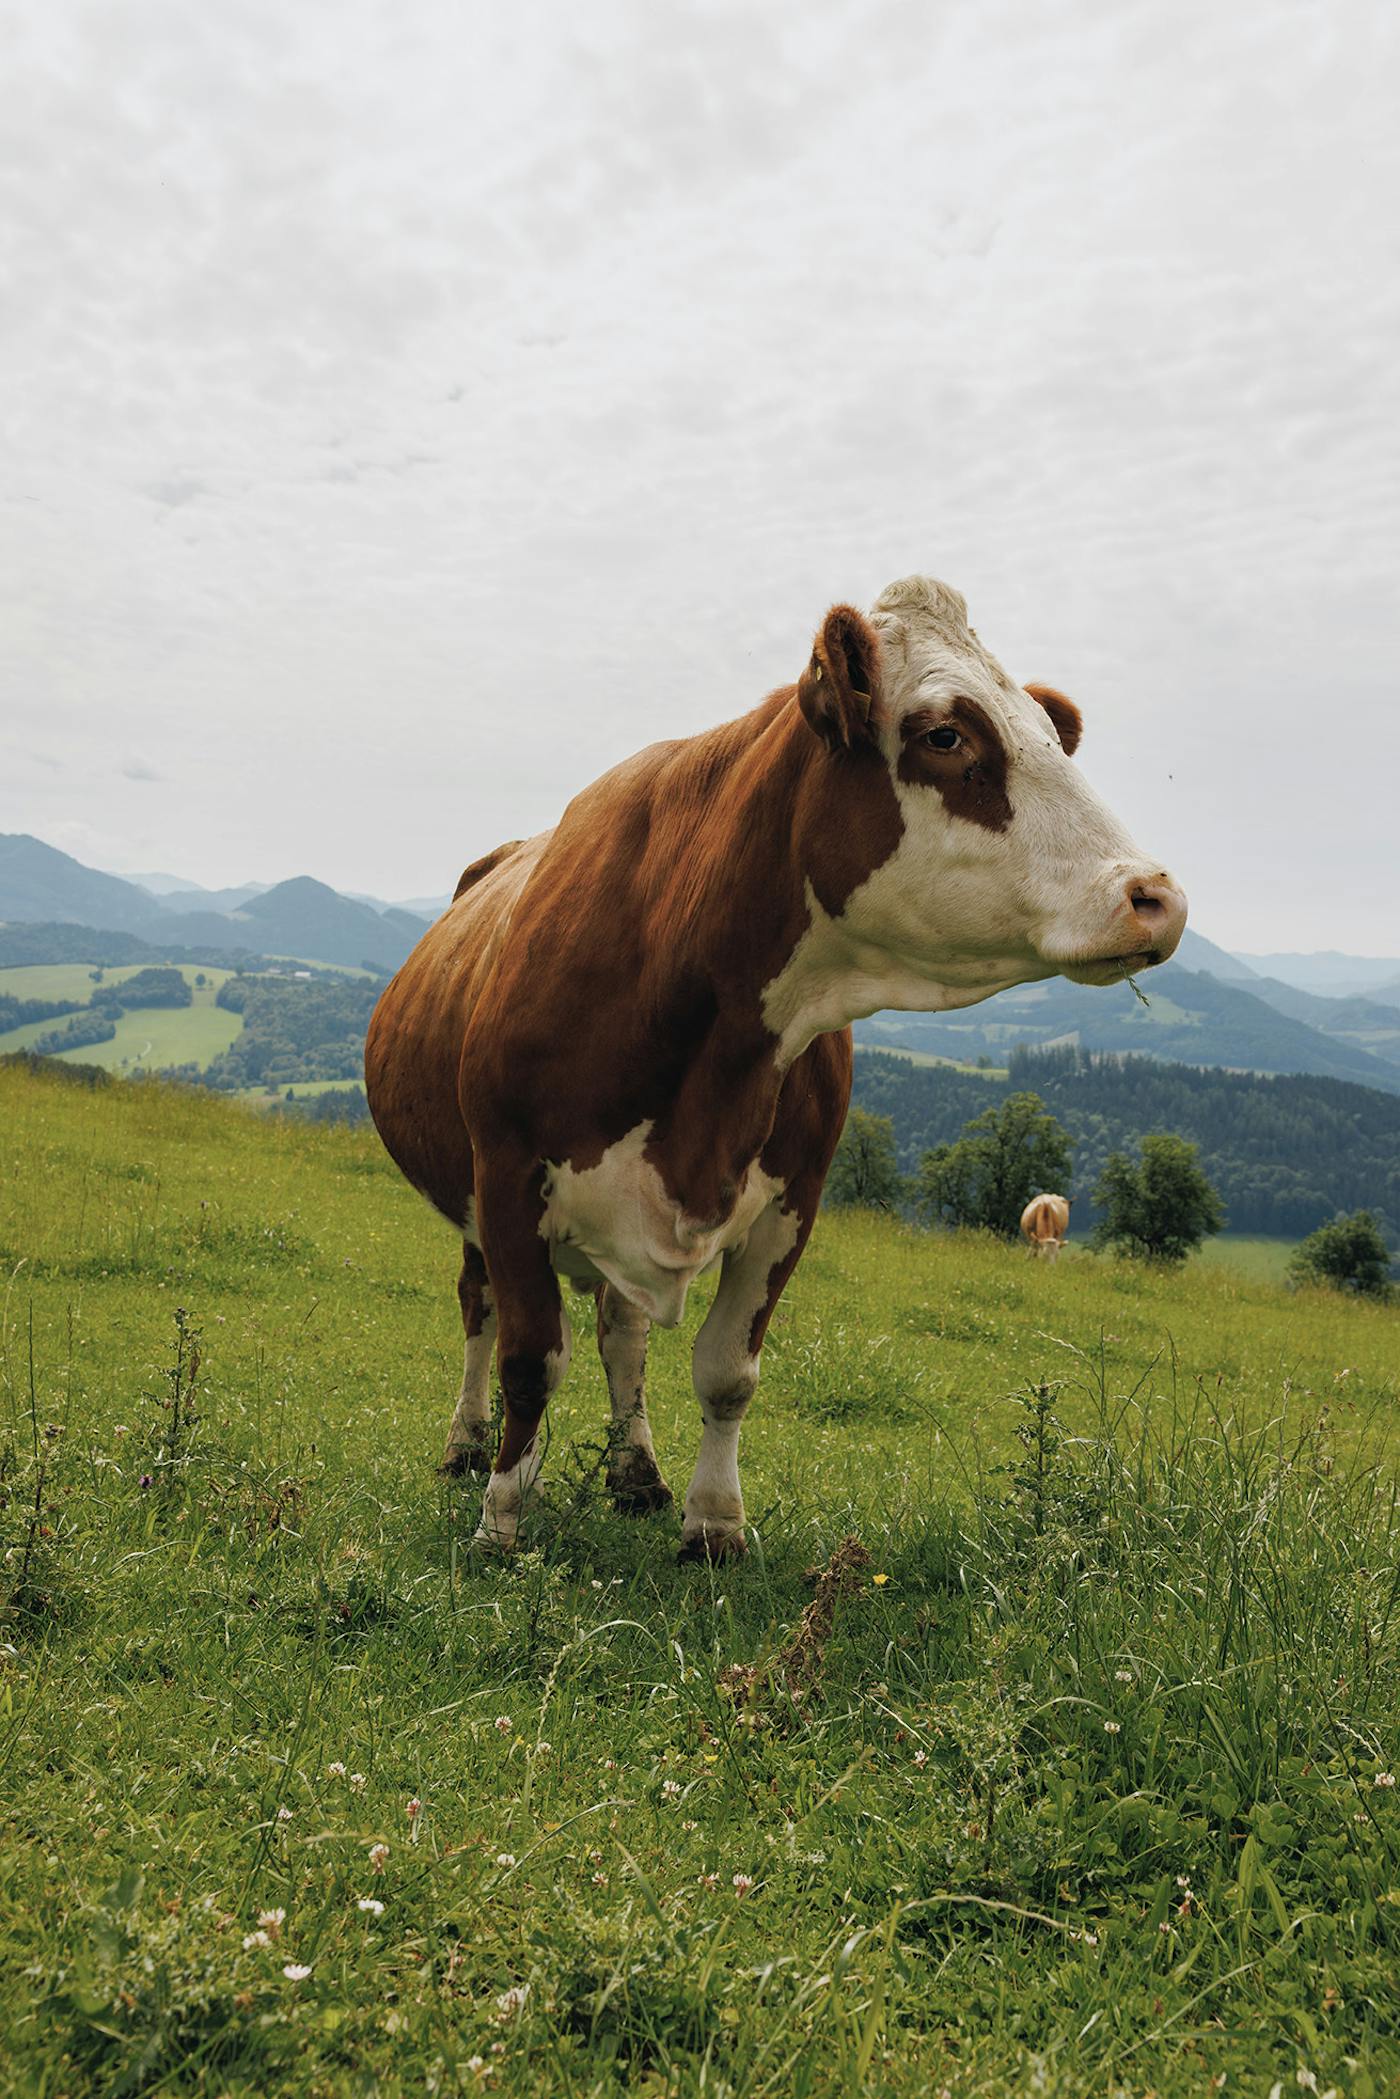 Ein atemberaubendes Panorama mit einer friedlichen Kuh, die auf einer grünen Weide grasend abgebildet ist.